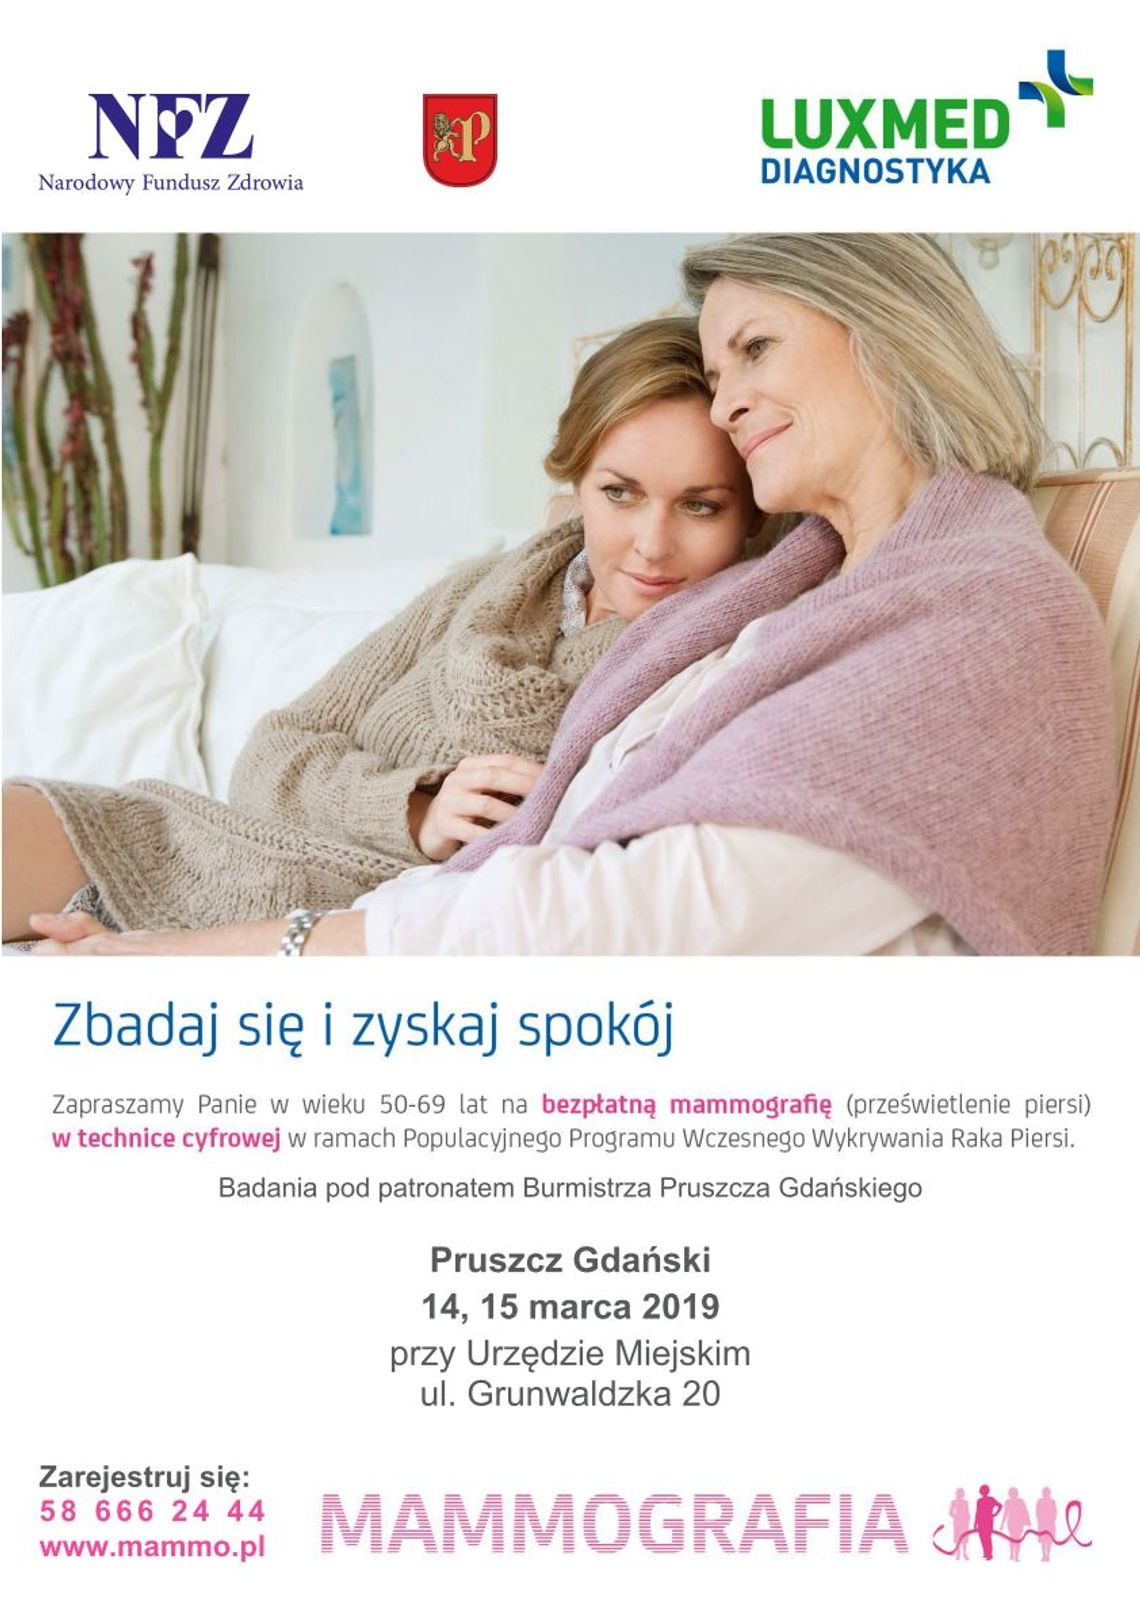 Mobilna pracownia mammograficzna w Pruszczu Gdańskim